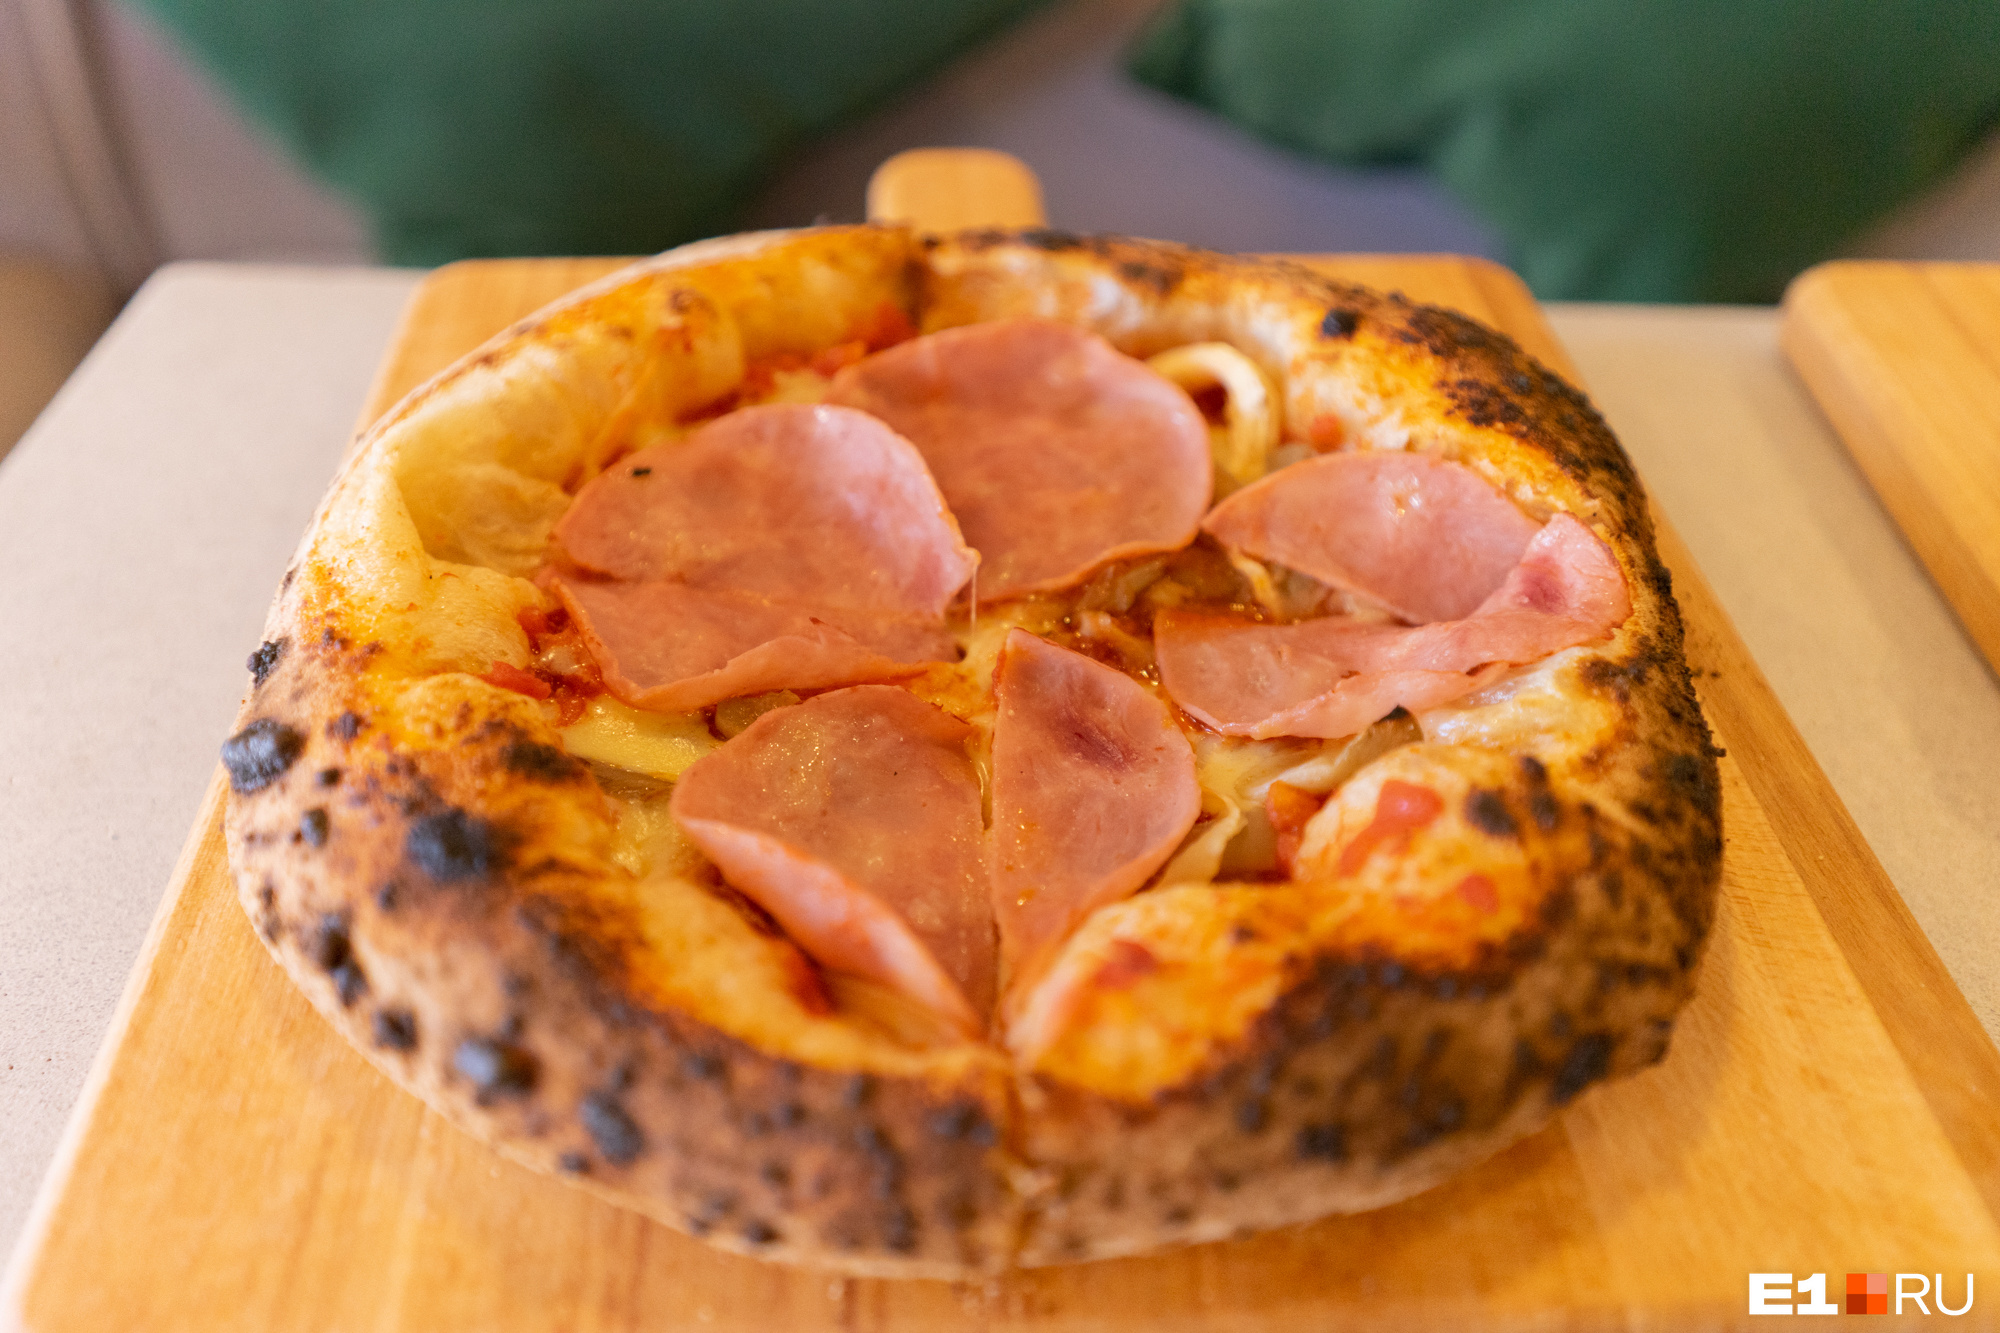 Для четырех классических вкусов пиццы можно выбрать тесто — римское или неаполитанское